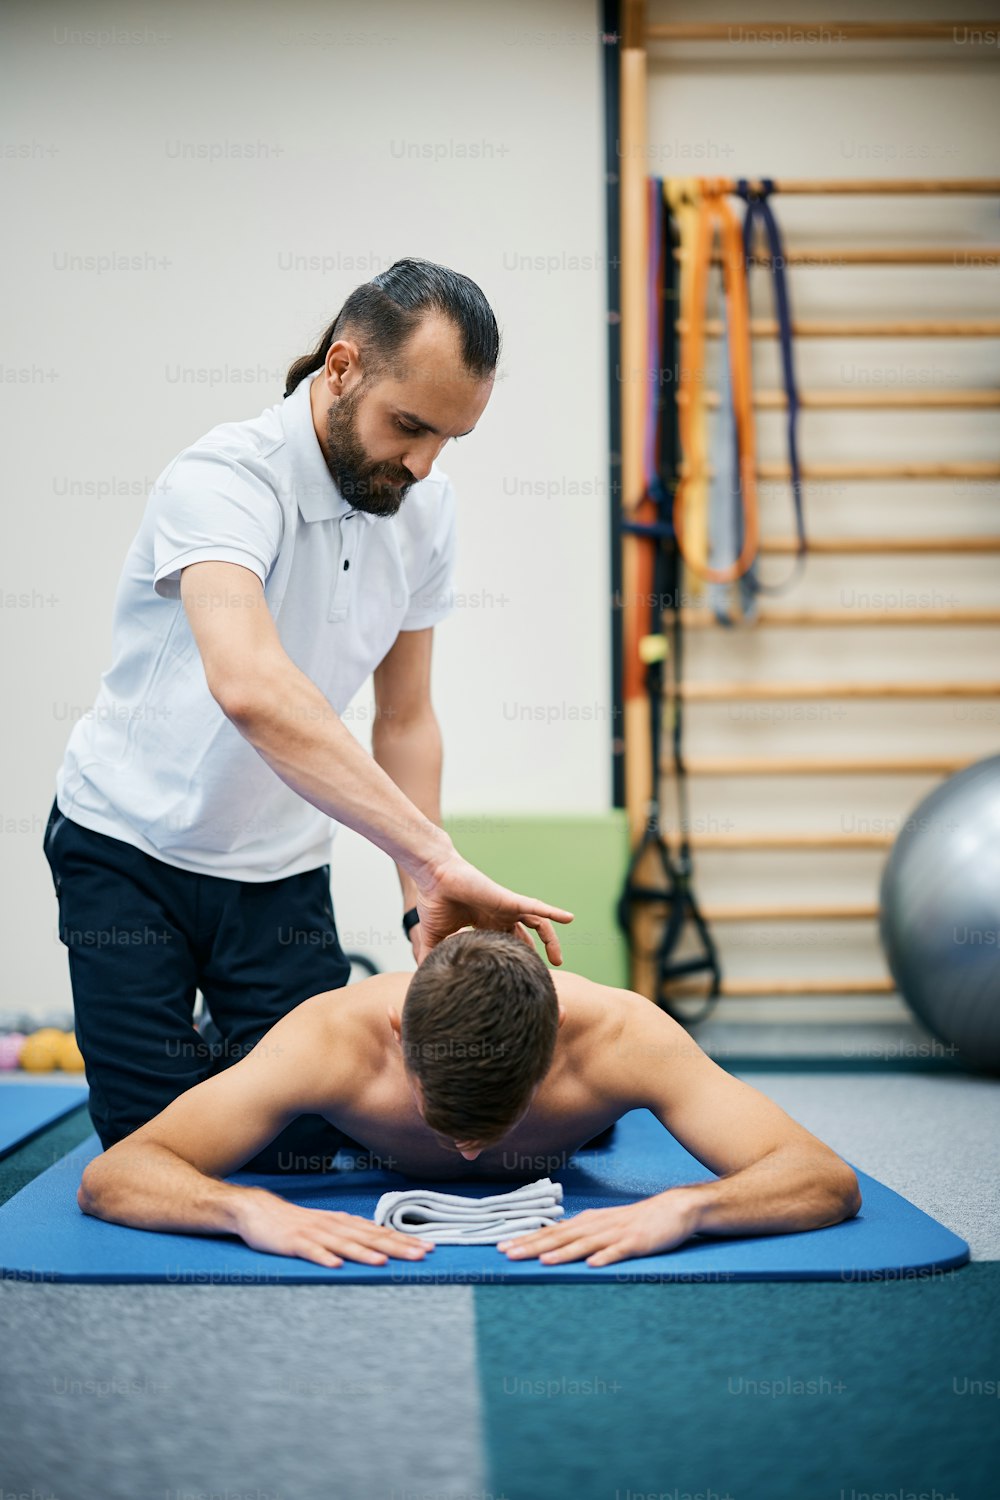 Fisioterapeuta massageando o pescoço do atleta durante o tratamento de reabilitação na academia de ginástica.